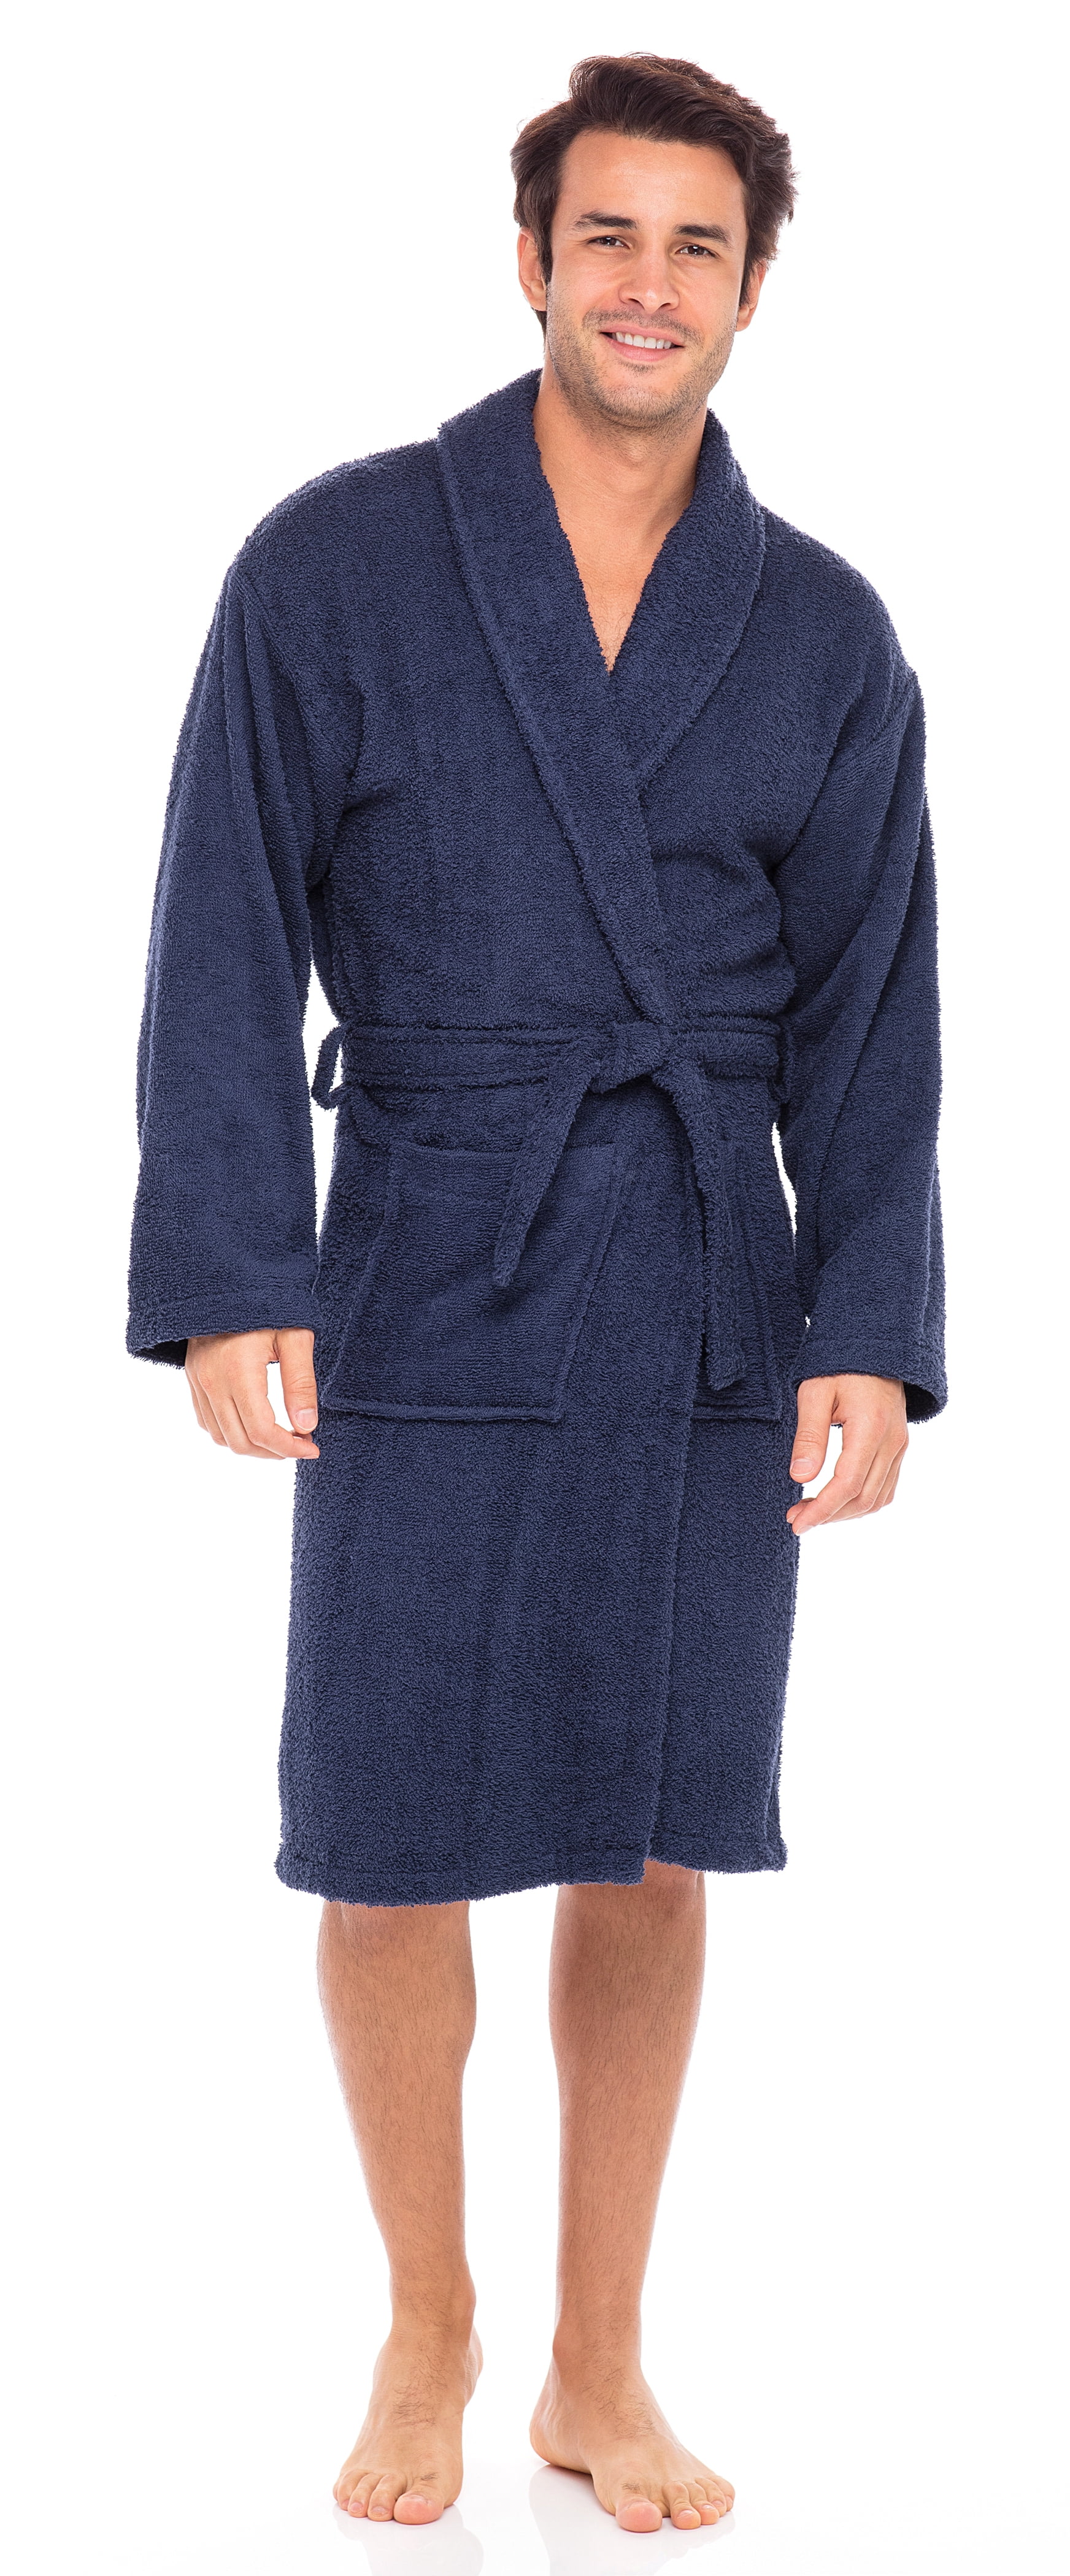 Skylinewears - Men’s Luxury Robe 100% Cotton Terry Robe Shawl Collar ...